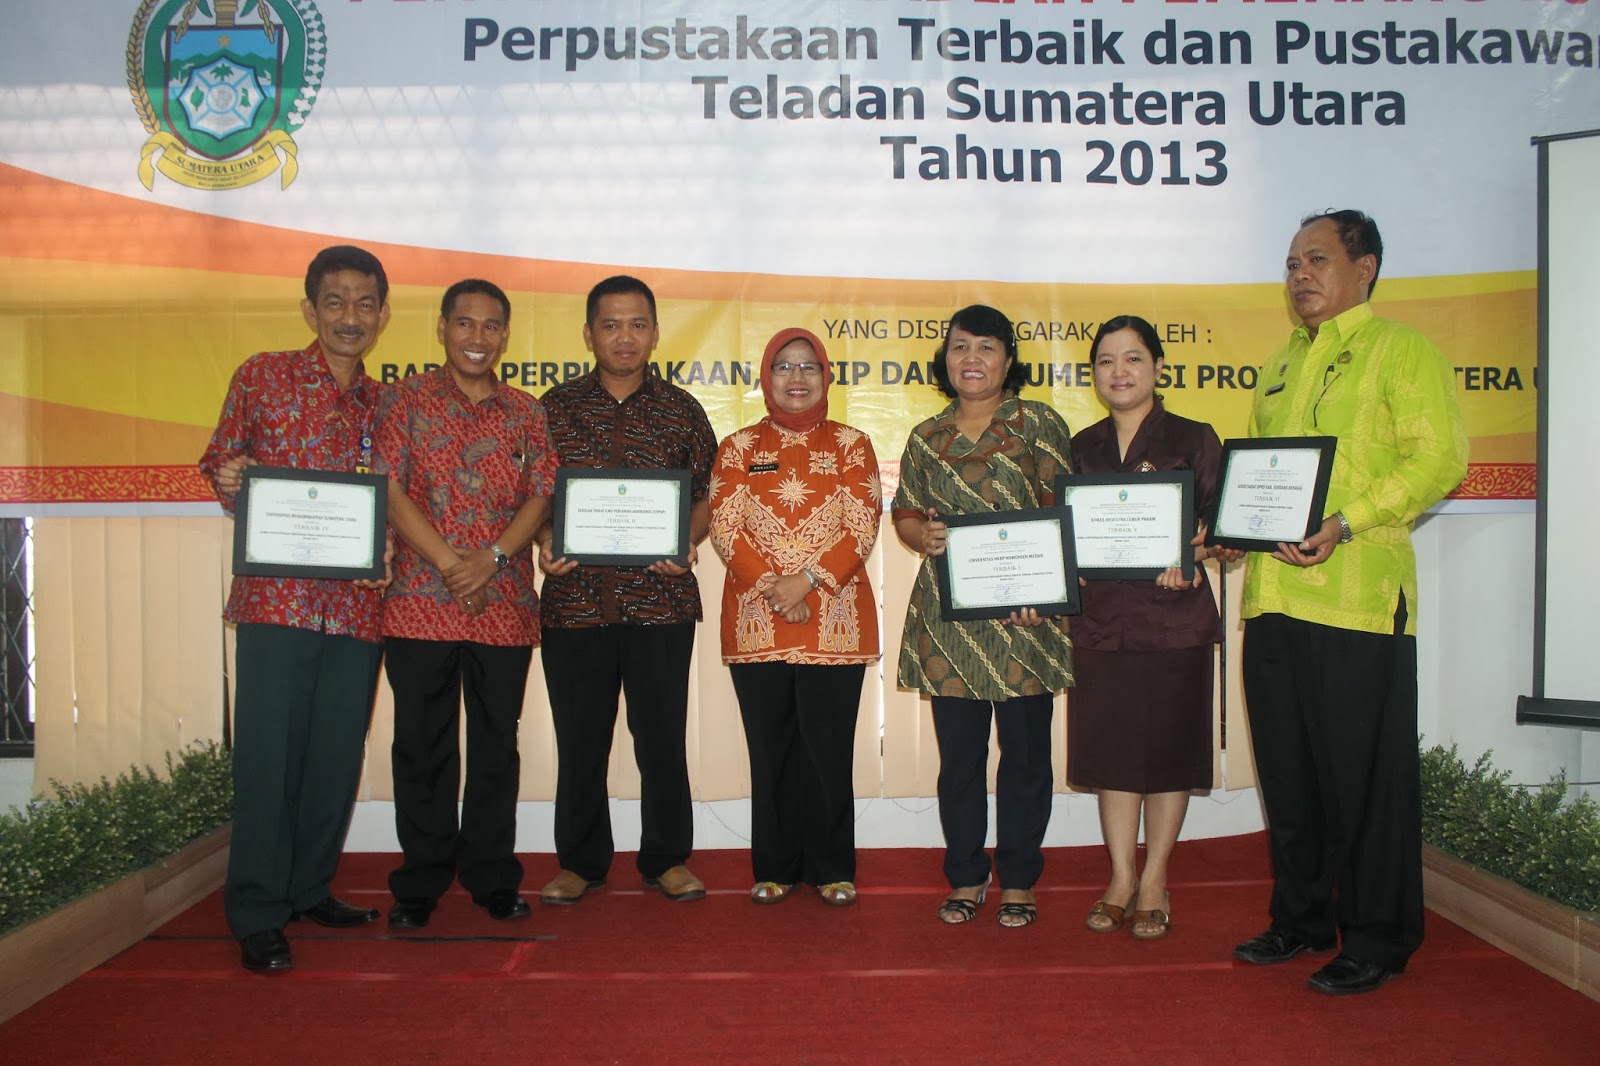  Penghargaan Perpustakaan Terbaik Sumatera Utara 